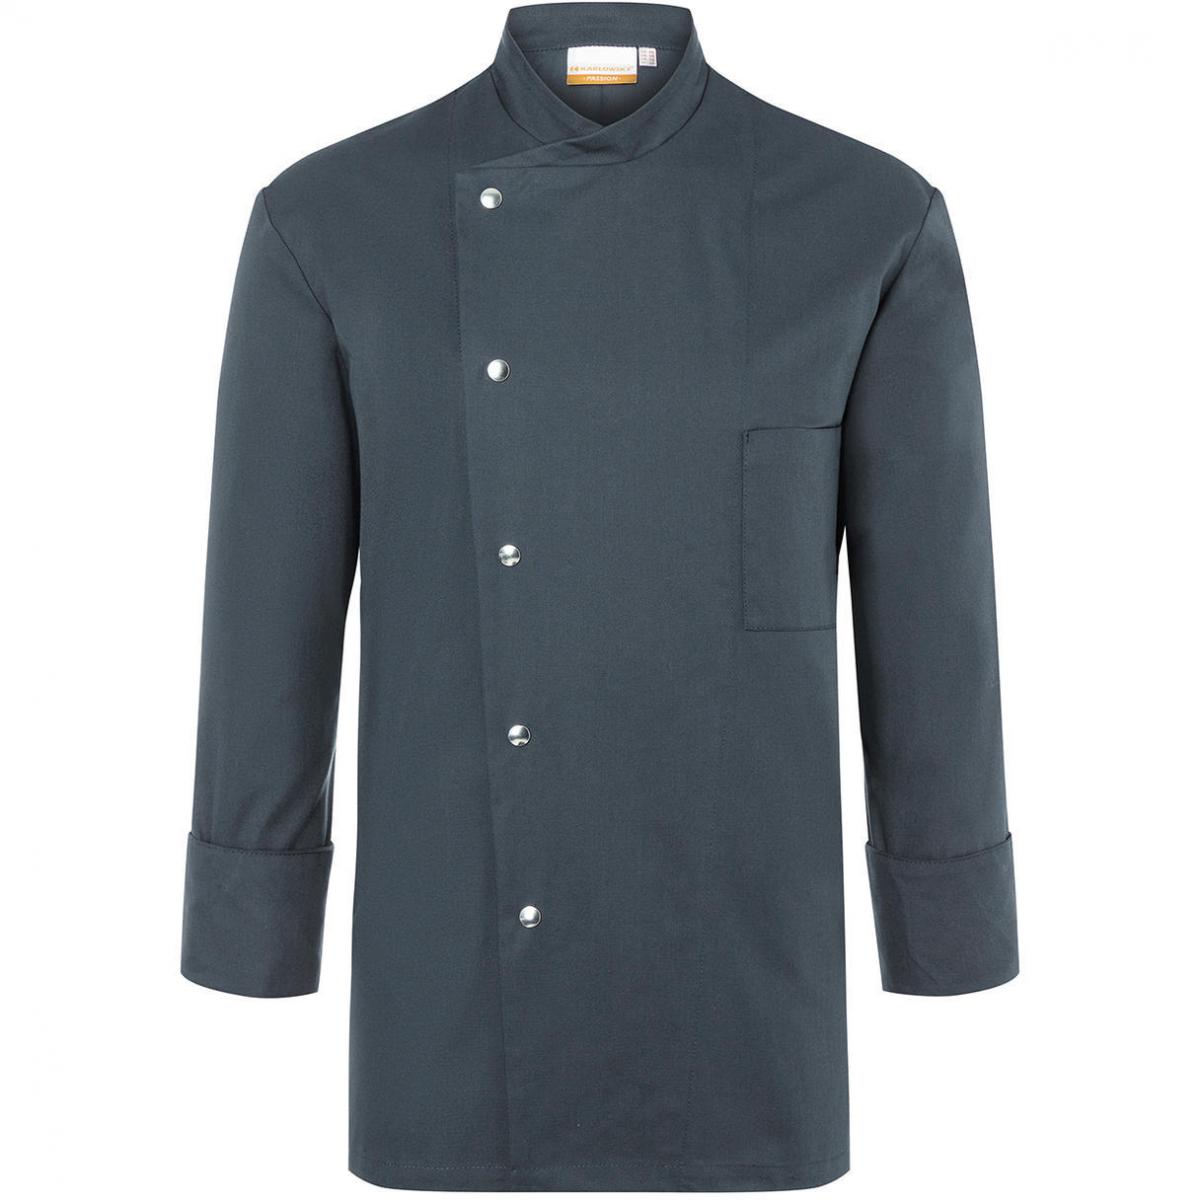 Hersteller: Karlowsky Herstellernummer: JM 14 Artikelbezeichnung: Chef Jacket Lars Long Sleeve Waschbar bis 95°C Farbe: Anthracite